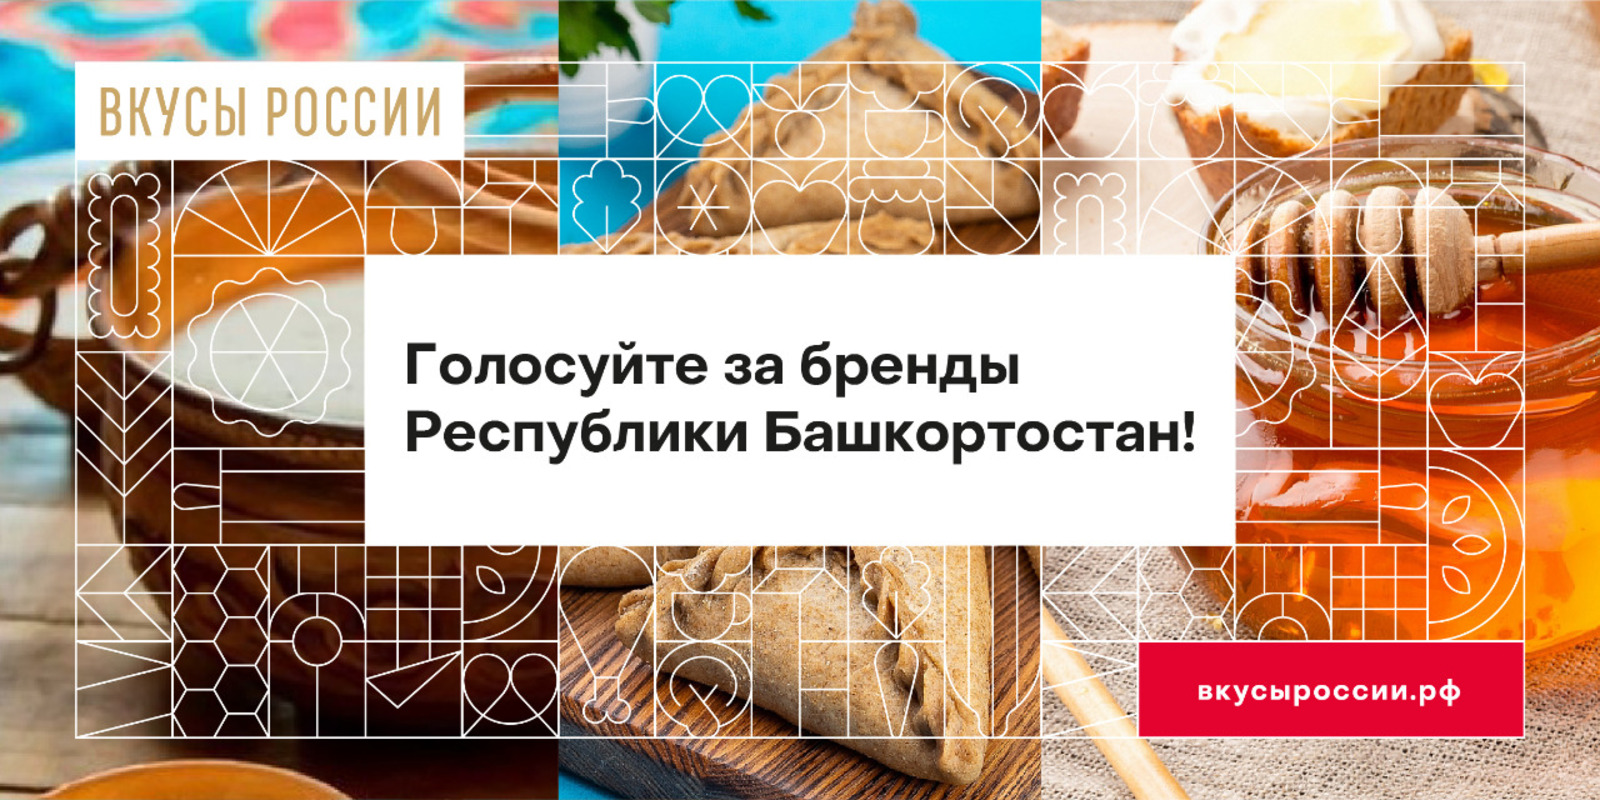 Проголосовать за башкирские бренды на конкурсе «Вкусы России» можно до 7 ноября